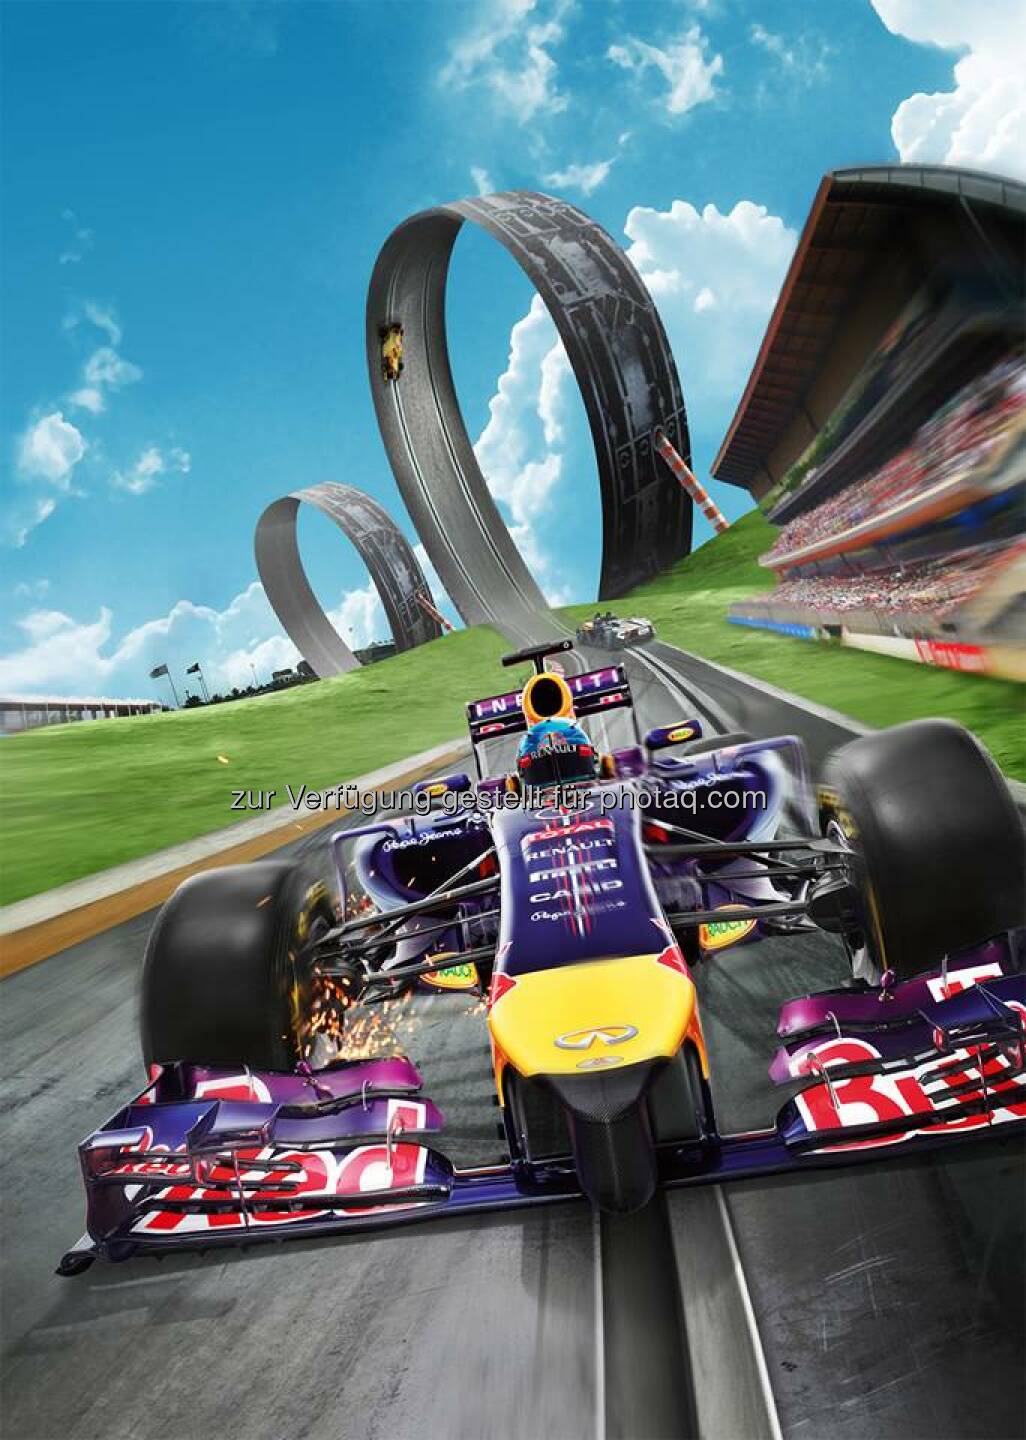 voestalpine: Update des Red Bull Racers Games mit dem neuen Red Bul Ring - mit dabei natürlich auch der voestalpine wing   Source: http://facebook.com/voestalpine